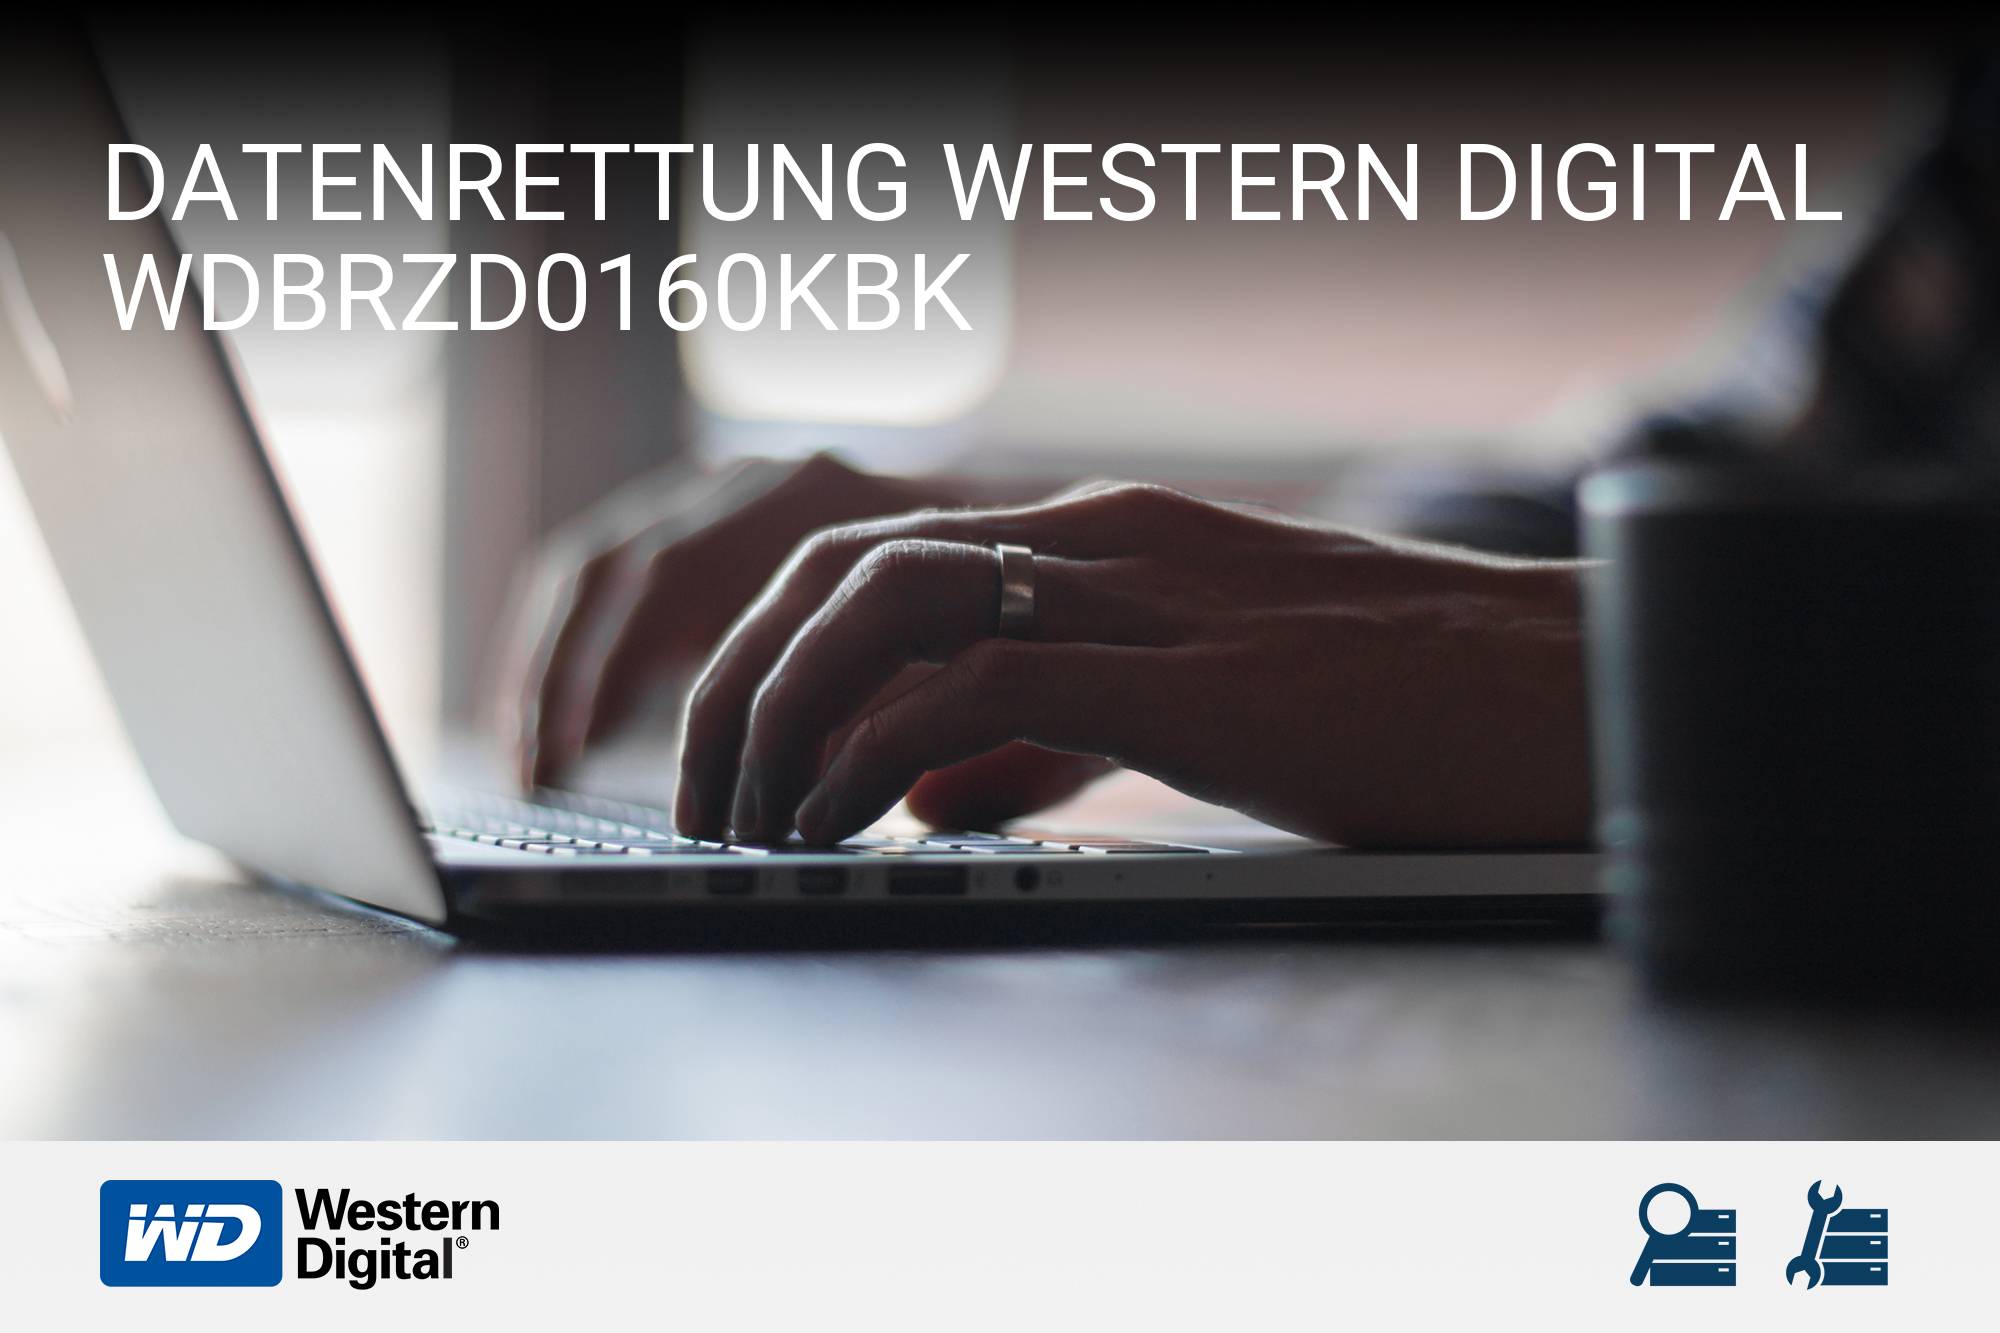 Western Digital WDBRZD0160KBK